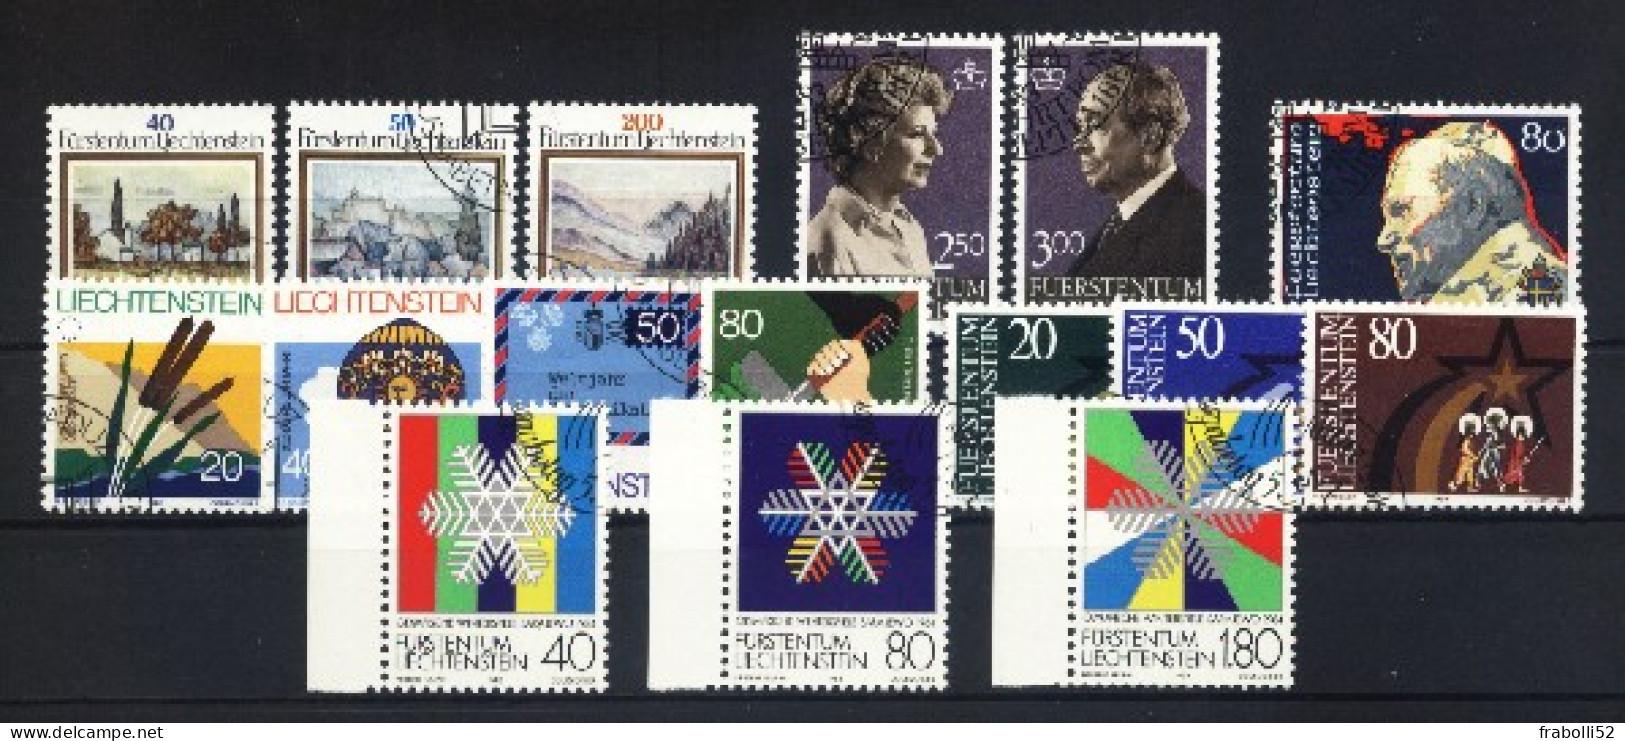 Liechtenstein Usati:  1983 Annata Non Completa - Annate Complete